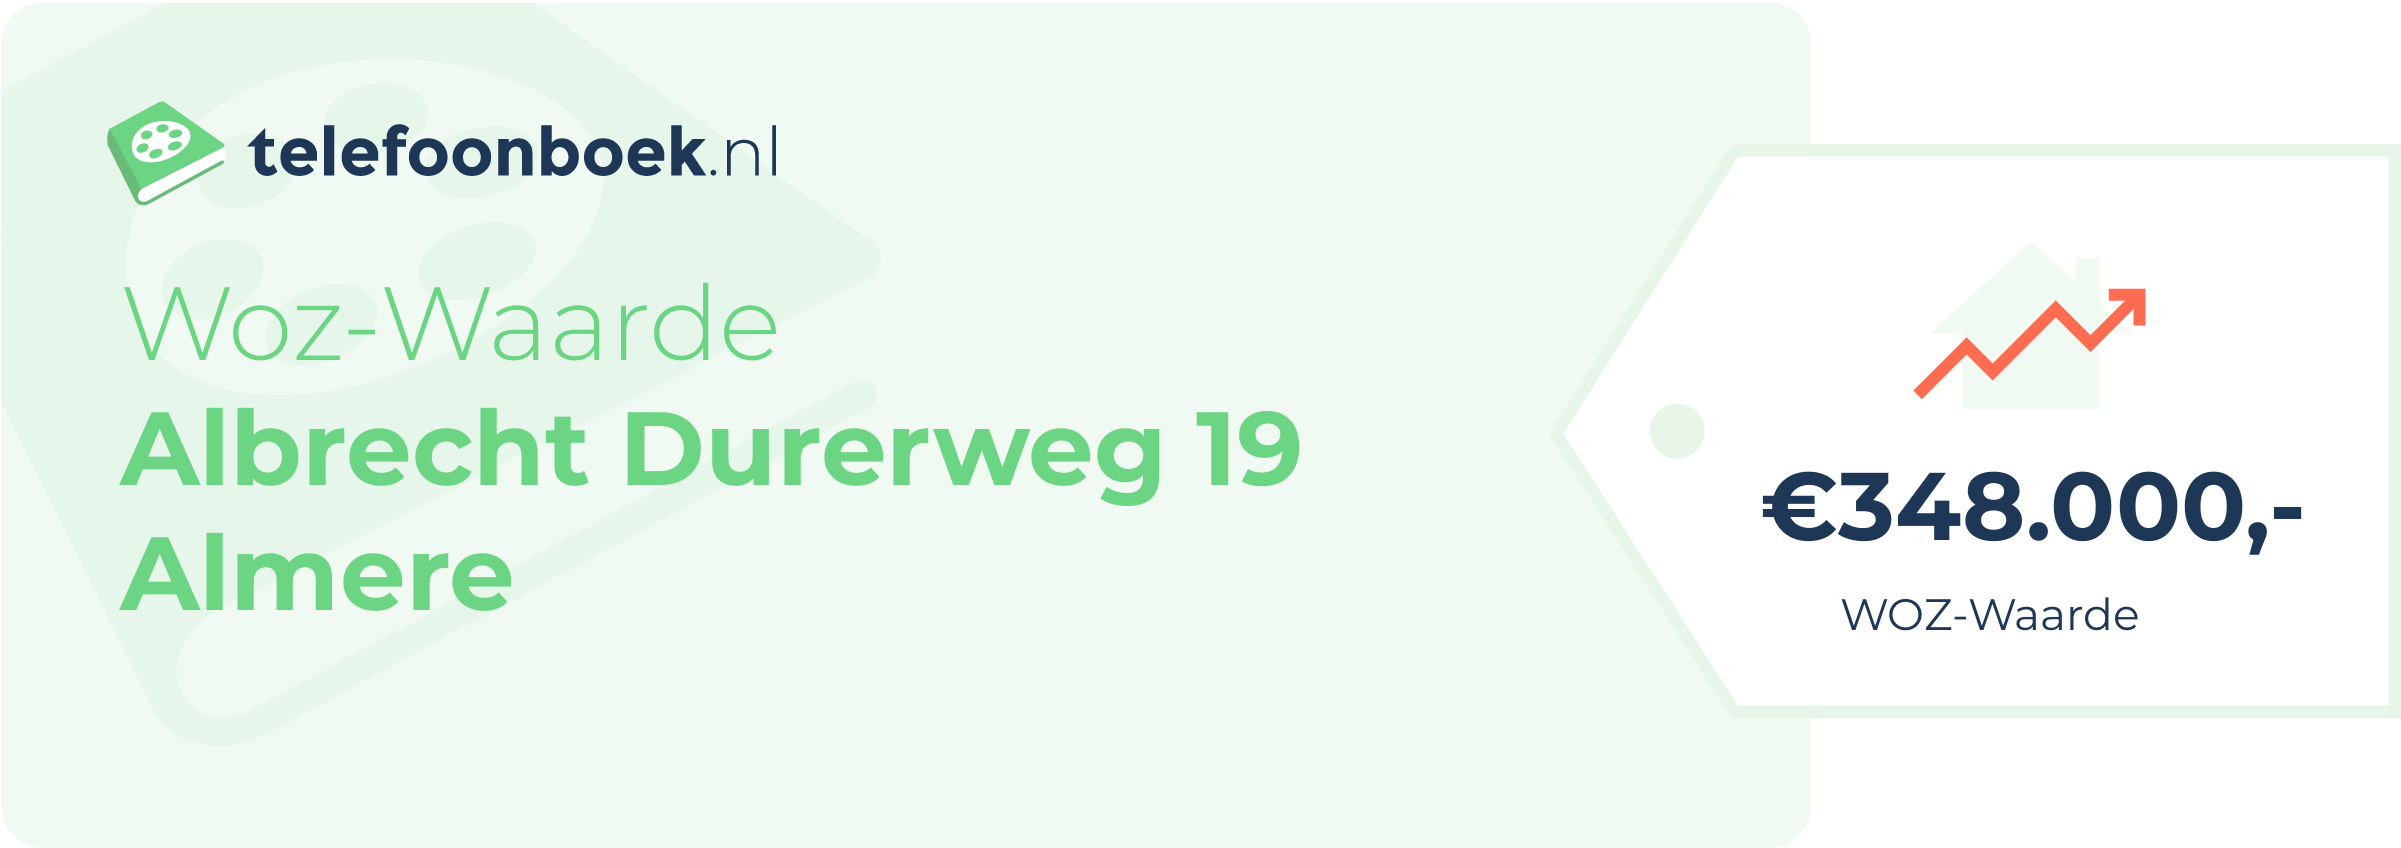 WOZ-waarde Albrecht Durerweg 19 Almere